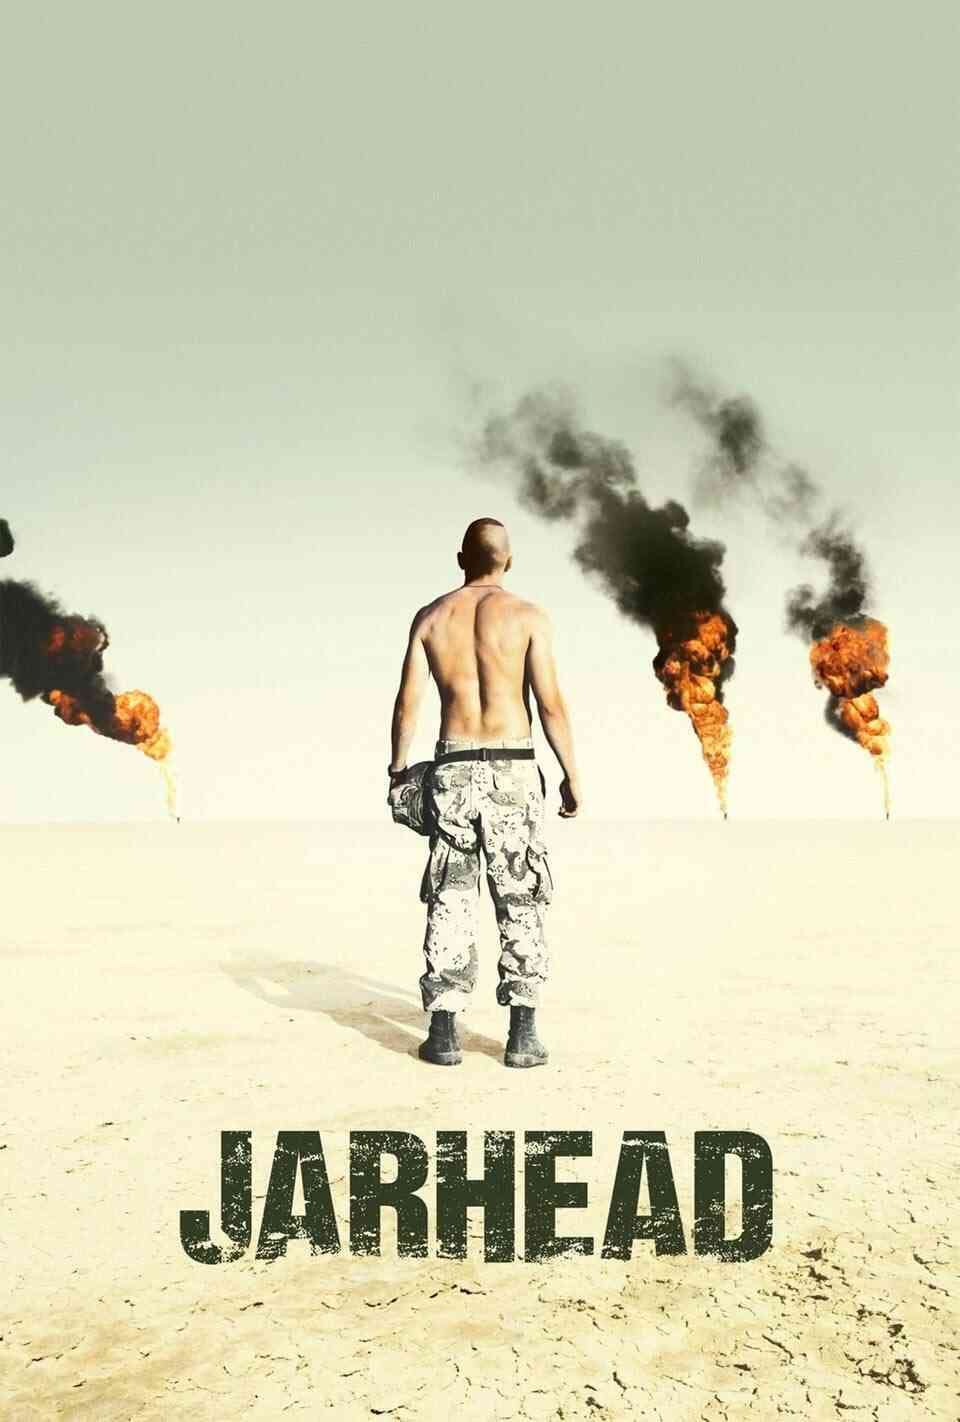 Read Jarhead screenplay (poster)